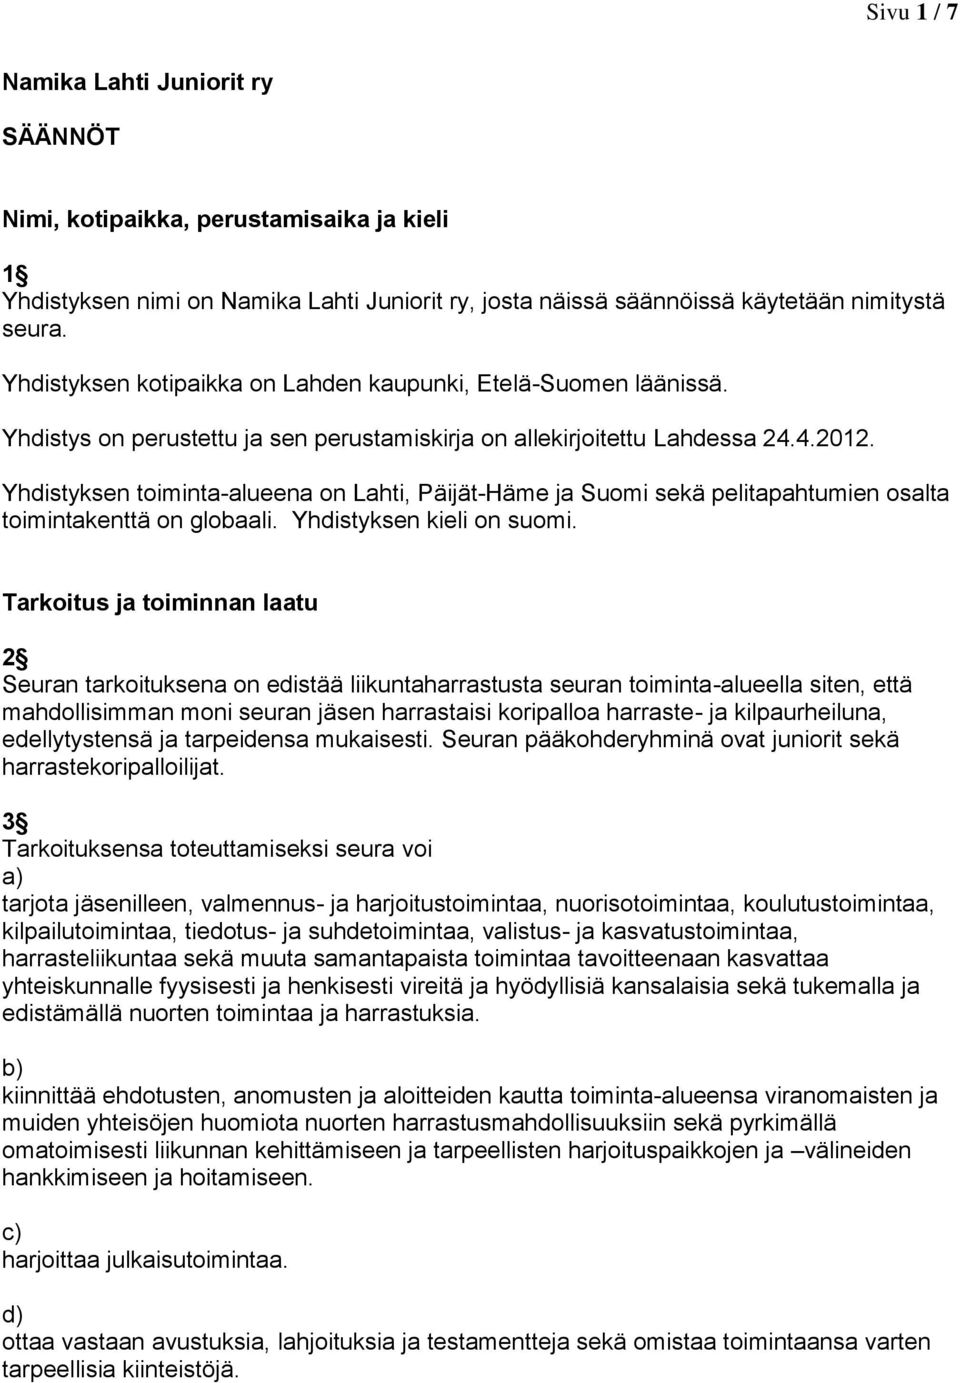 Yhdistyksen toiminta-alueena on Lahti, Päijät-Häme ja Suomi sekä pelitapahtumien osalta toimintakenttä on globaali. Yhdistyksen kieli on suomi.